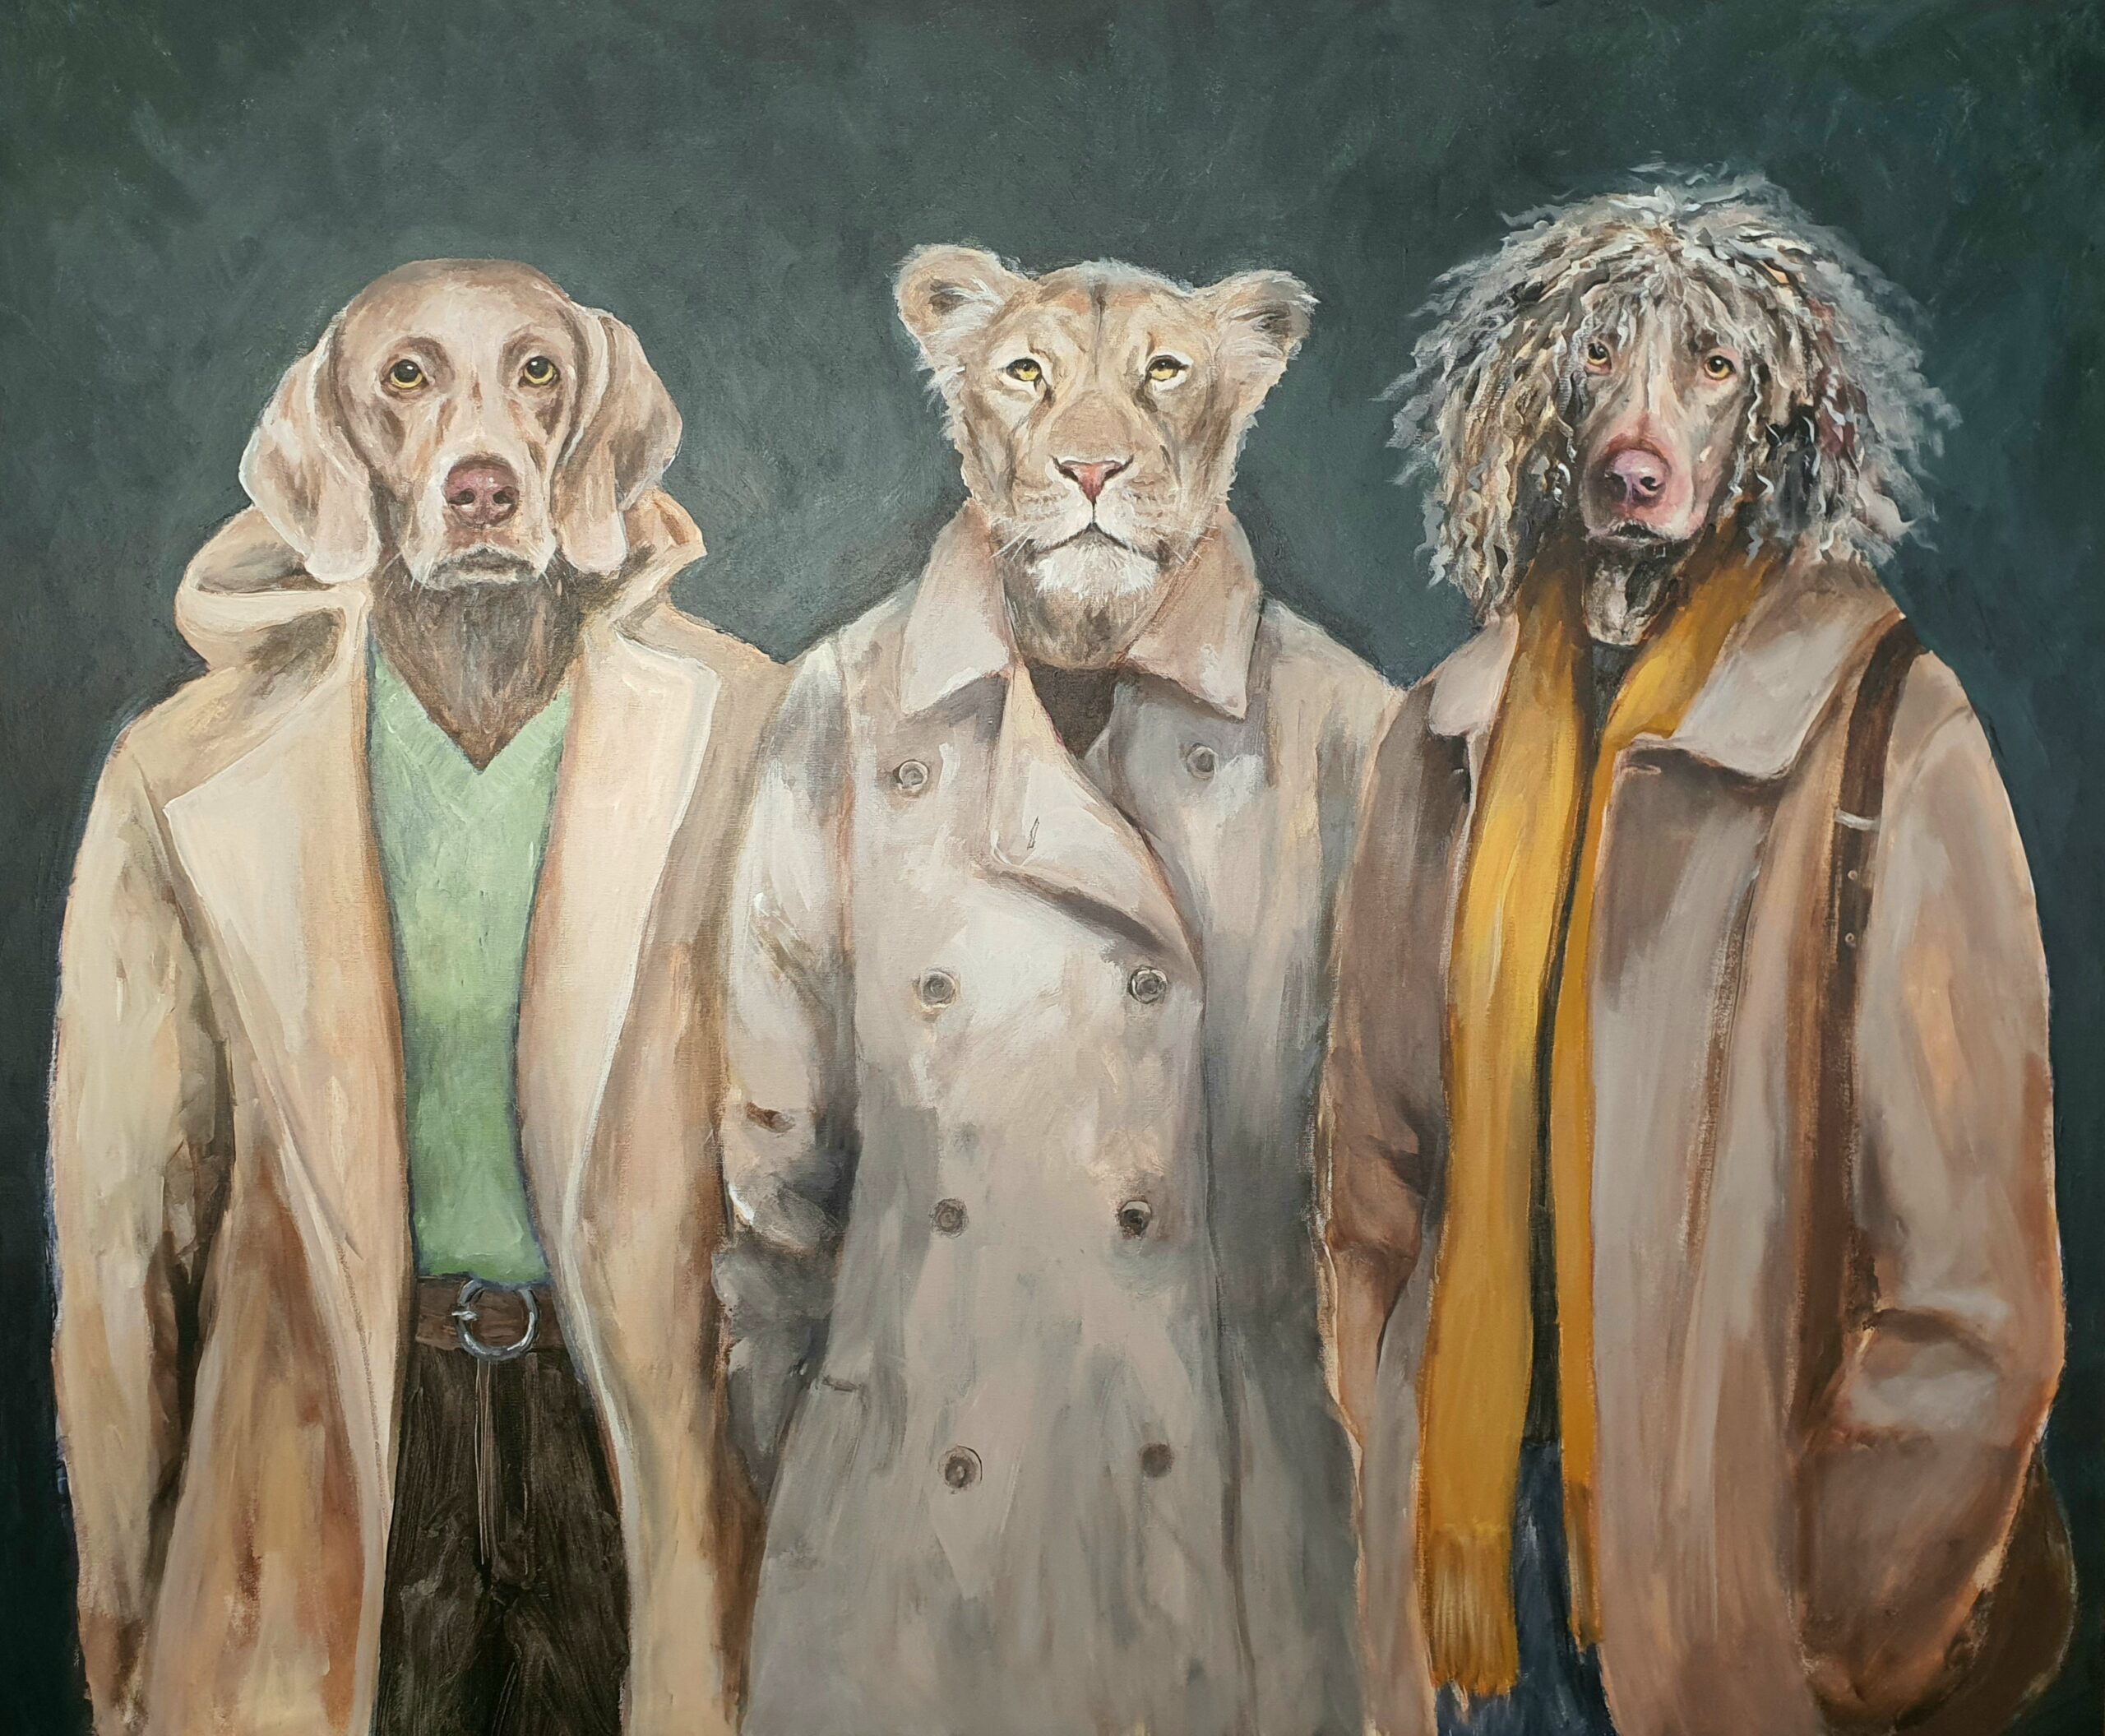 konstellasjon hund løve puddel frakk emmy harnes dyrebilde dyr i kunsten billedkunst figurativ kunst antrofomorfisme anthropomorphism eventyrlig